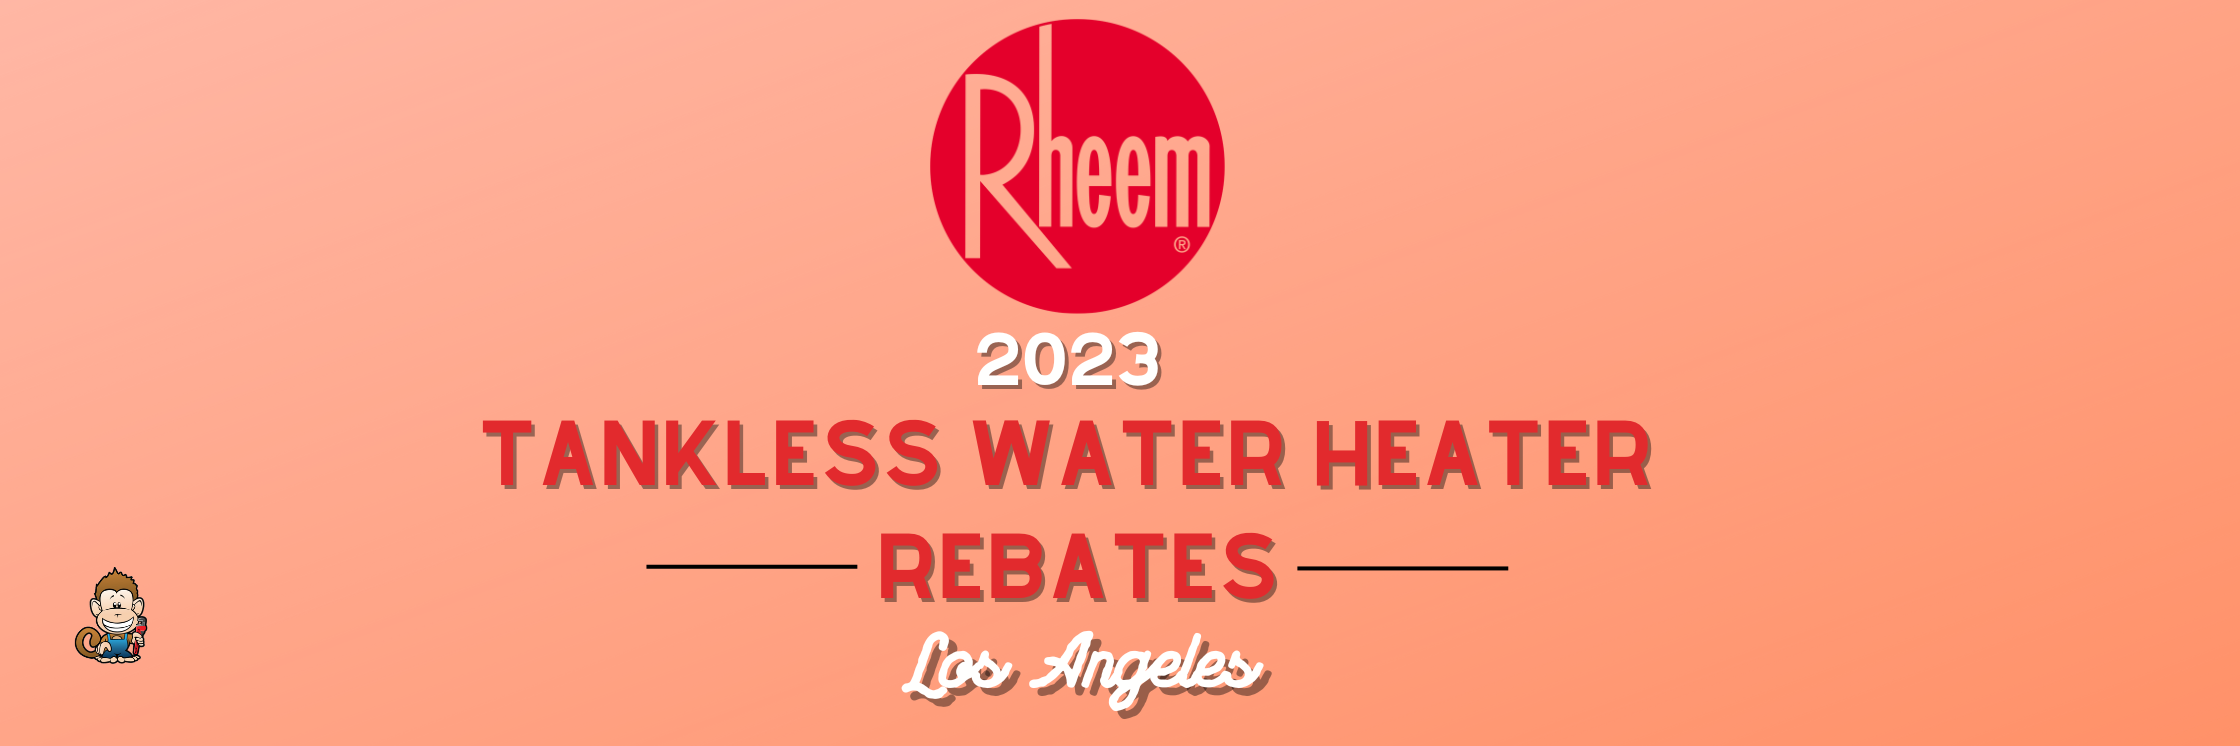 2023 Rheem Tankless Water Heater Rebates for Los Angeles